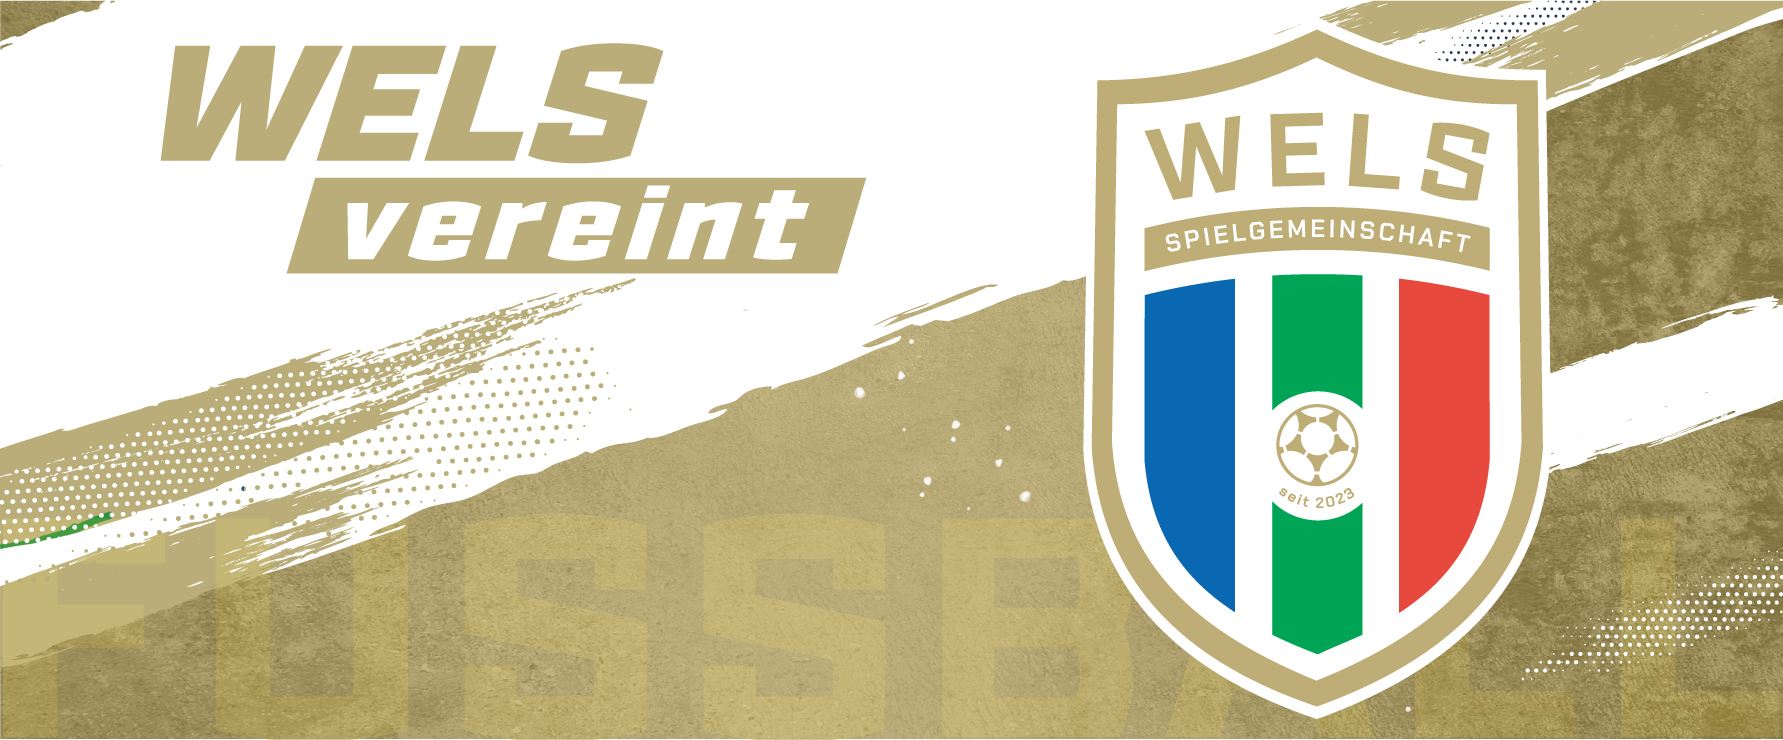 Mauth Stadion WSC Hertha Wels 2